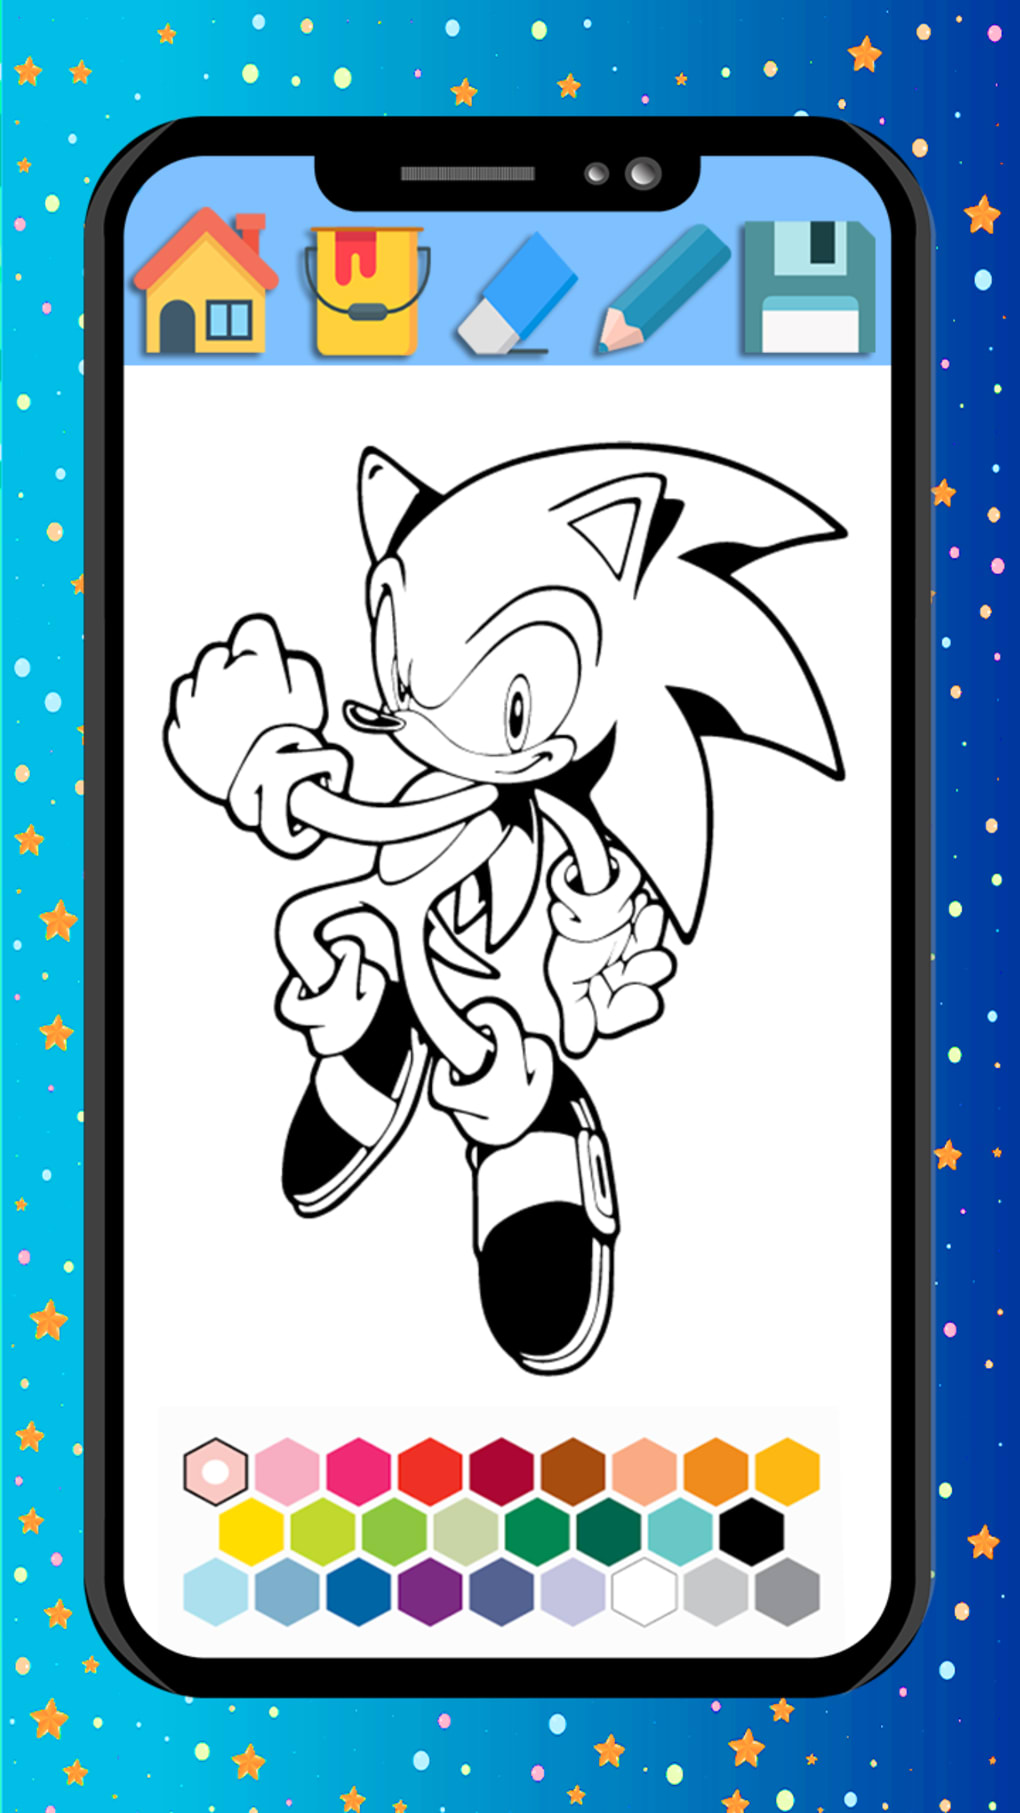 Como desenhar o Sonic do filme - Mundo da Imaginação - Colorindo e